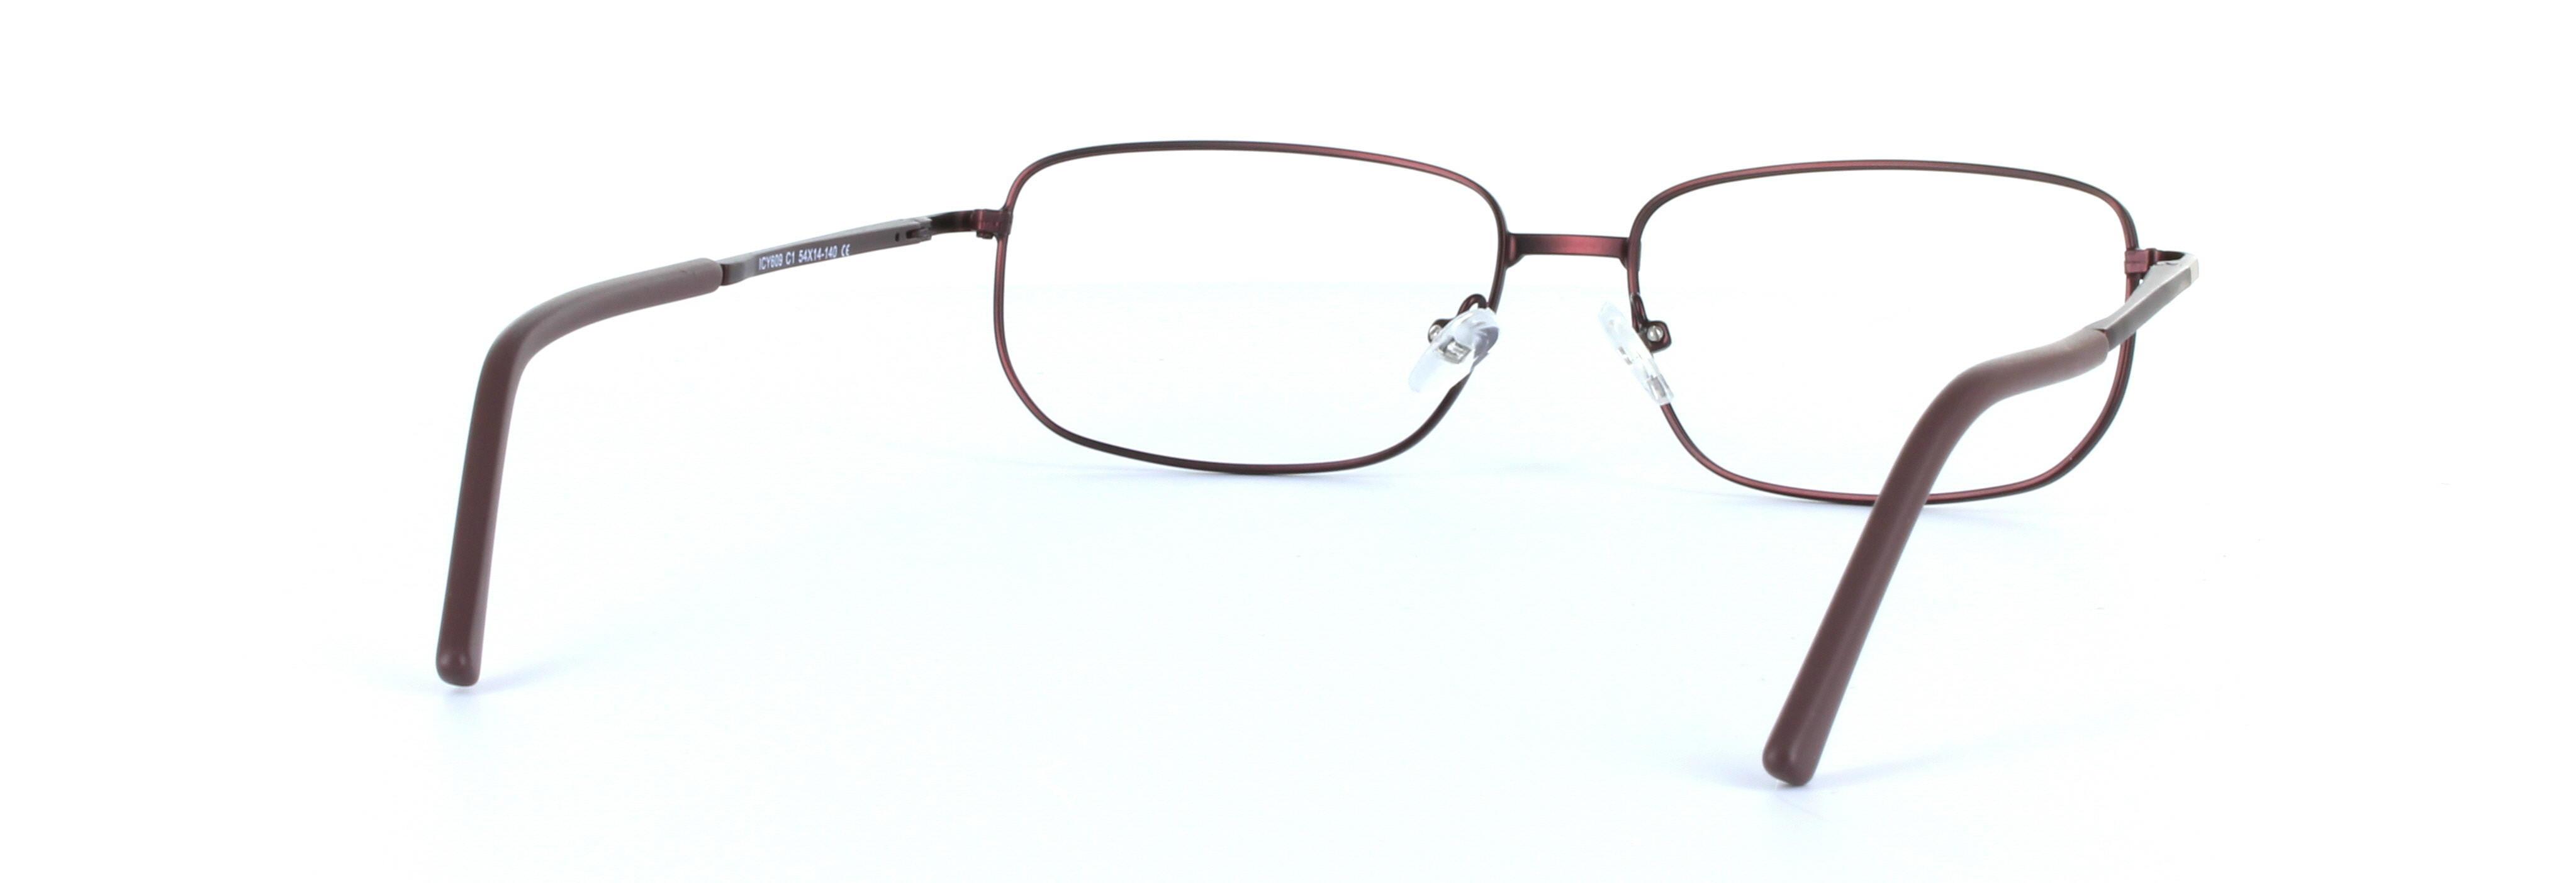 Alex Burgundy Full Rim Rectangular Metal Glasses - Image View 3